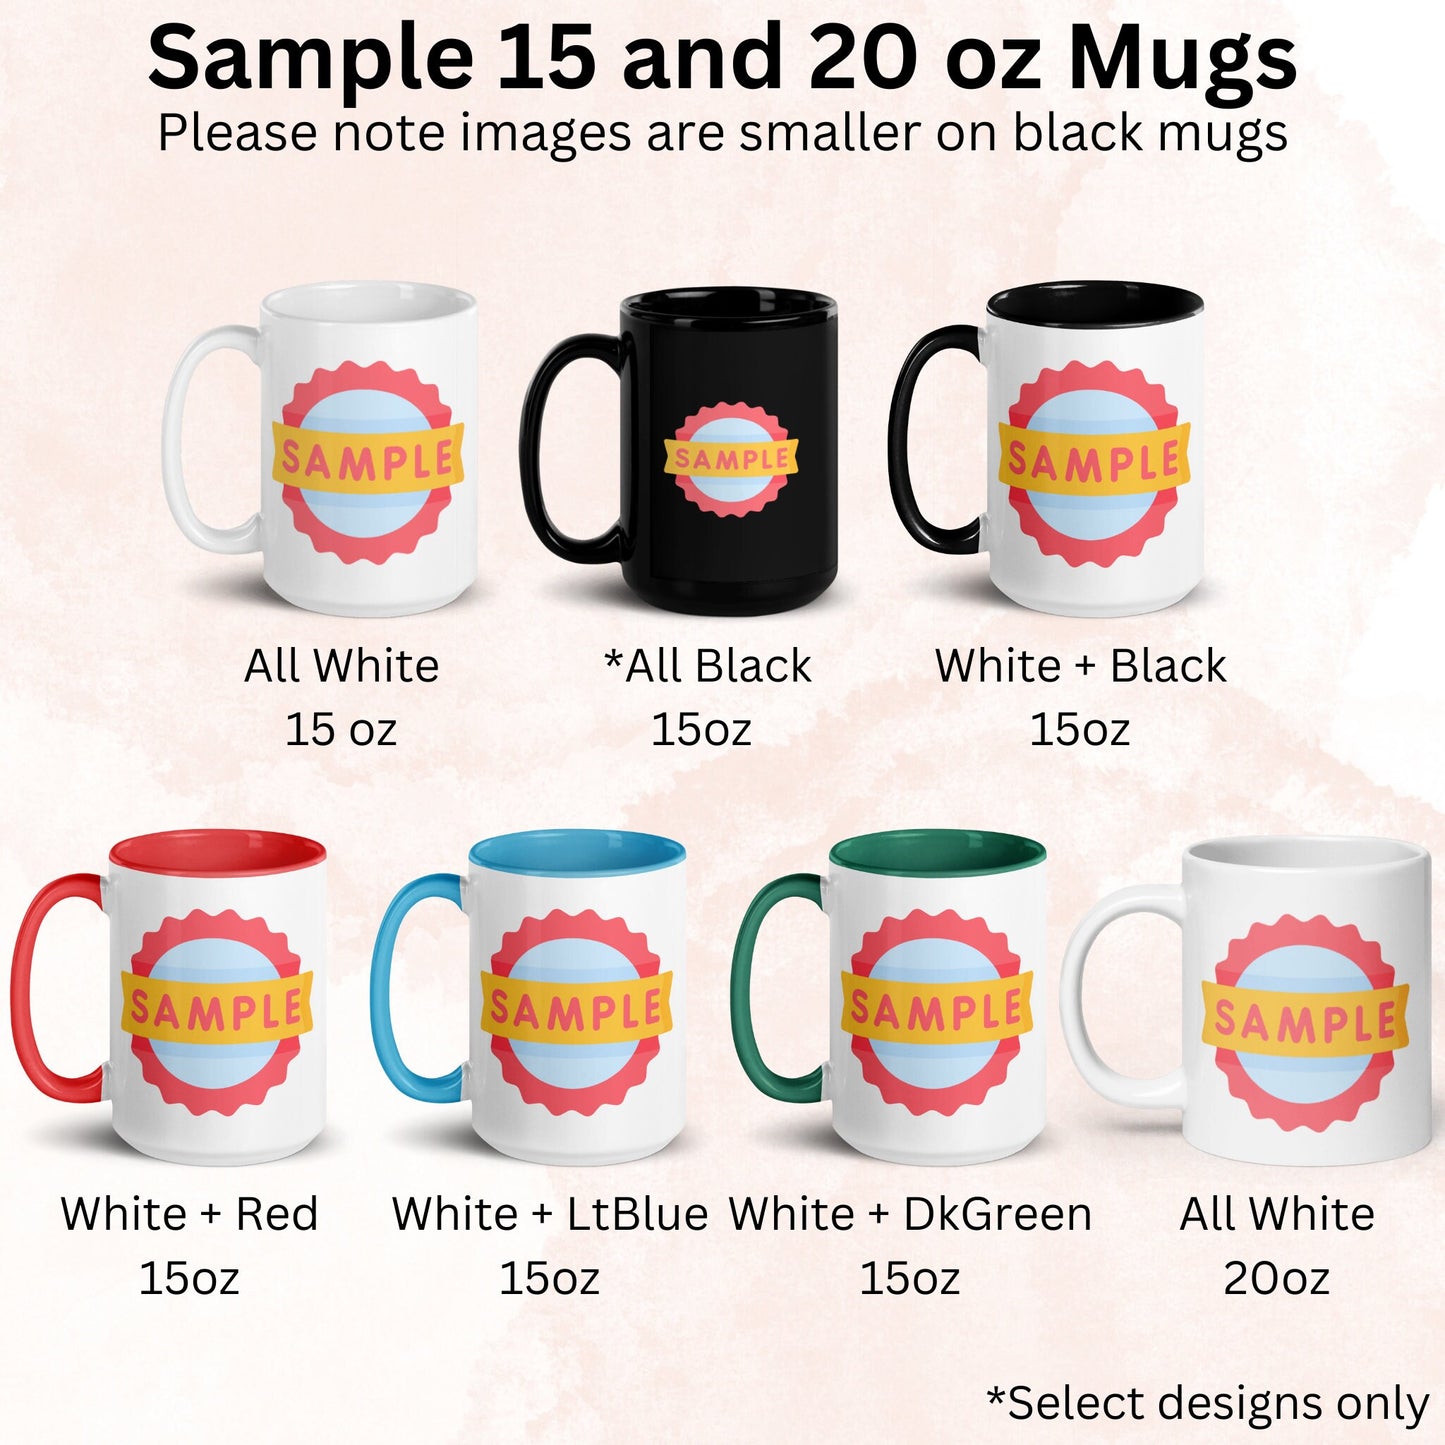 Elephant Gifts, Elephant Mug - Zehnaria - PETS & ANIMALS - Mugs